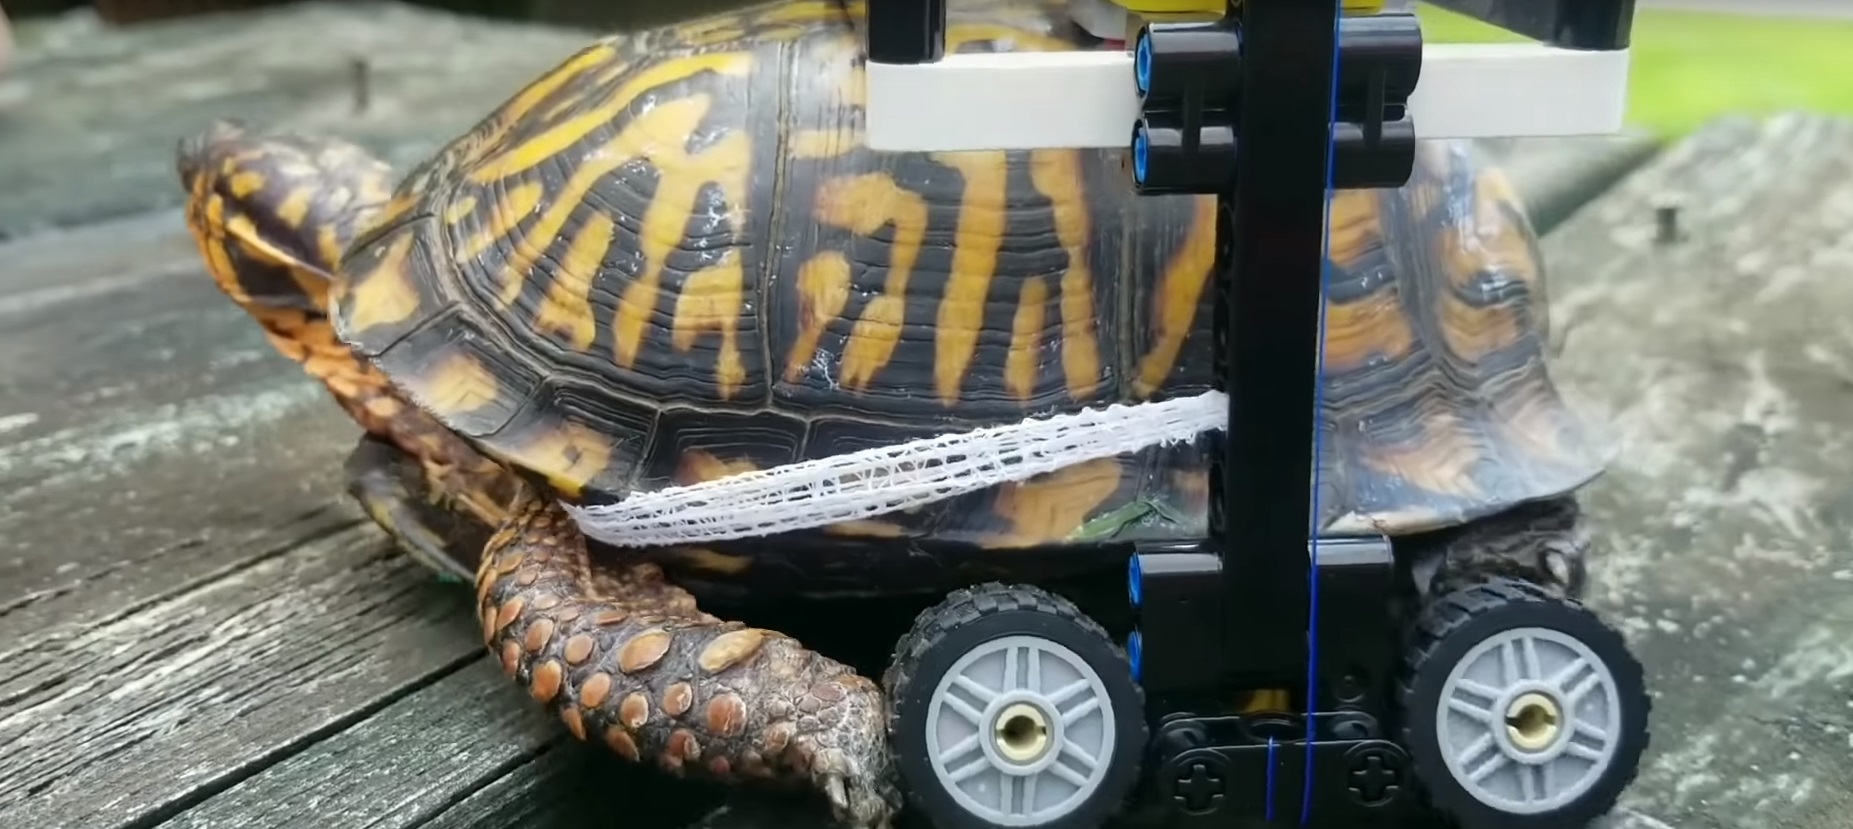 Legóból készült kerekesszéket kapott a páncéltörött teknős